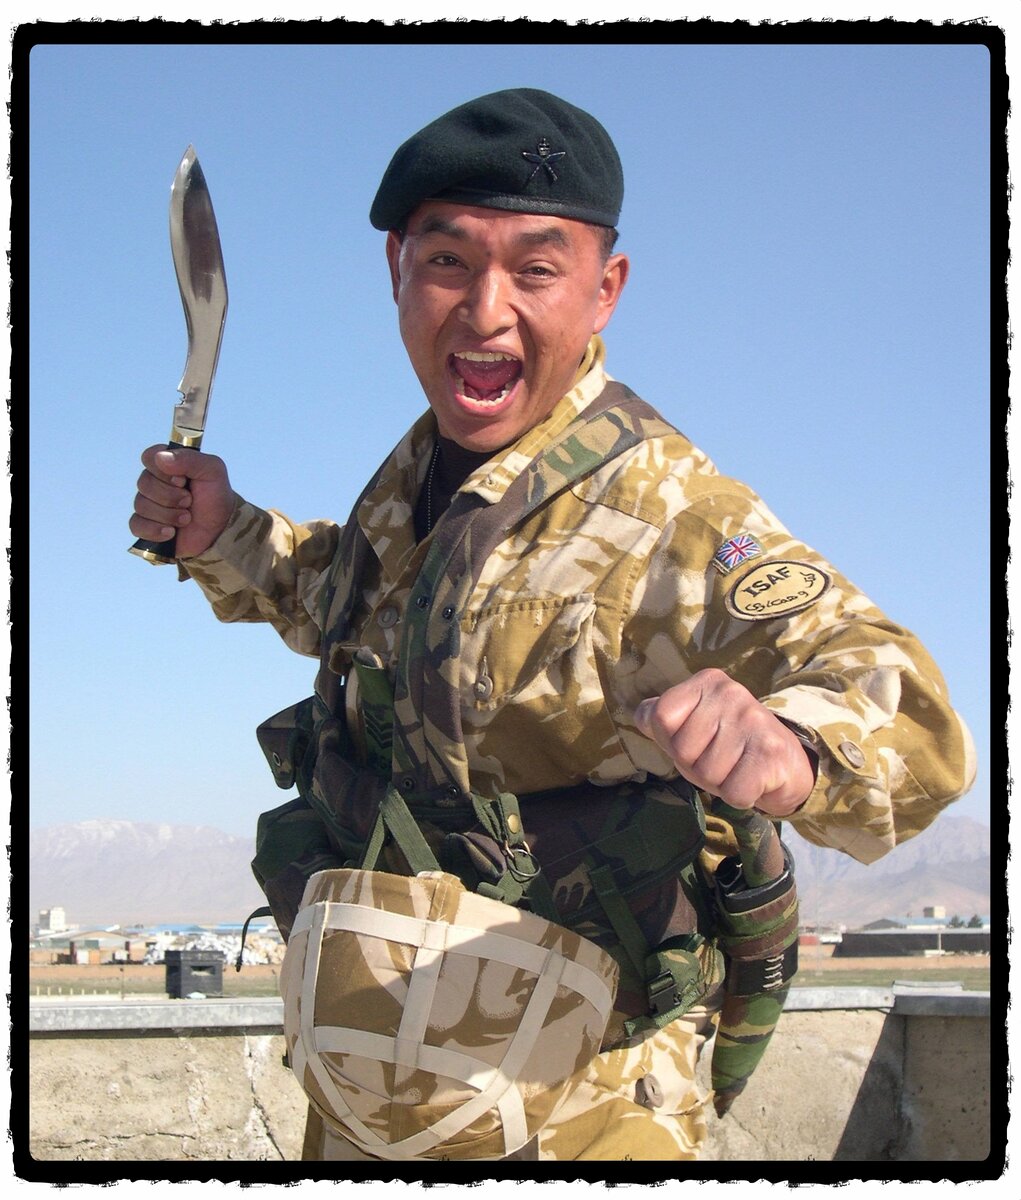 Сержант Королевских гуркхских стрелков с ножом-кукри, Афганистан